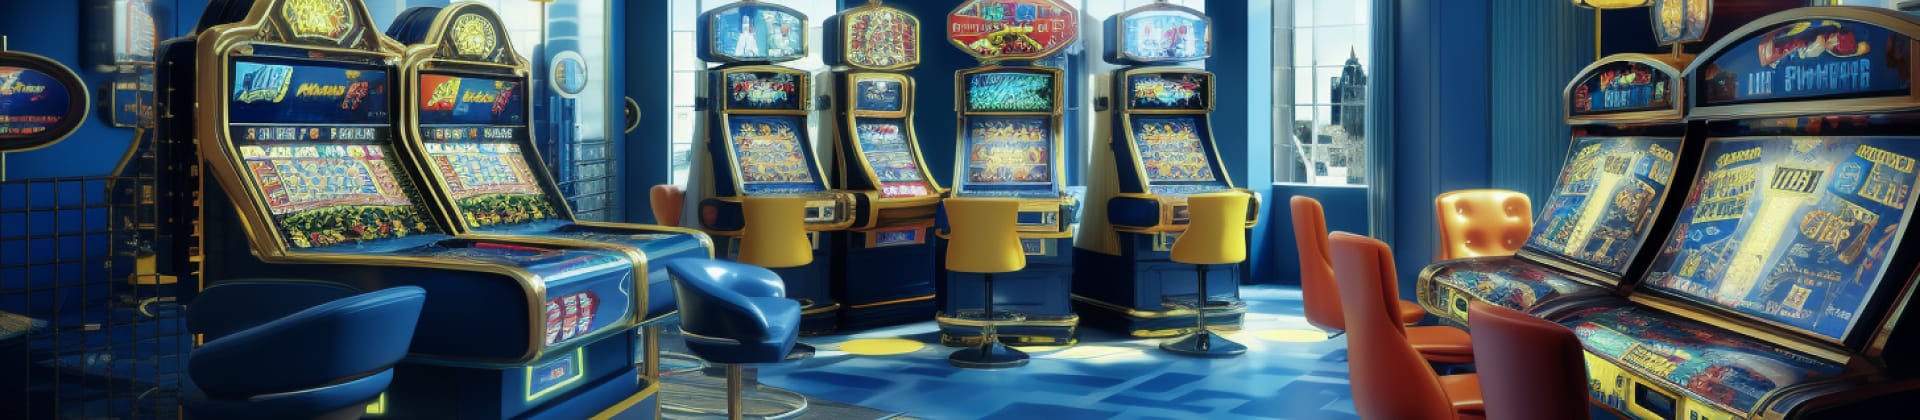 Das beste Casino ohne gültige Lizenzen ist es, auf Mobilgeräten spielen zu können